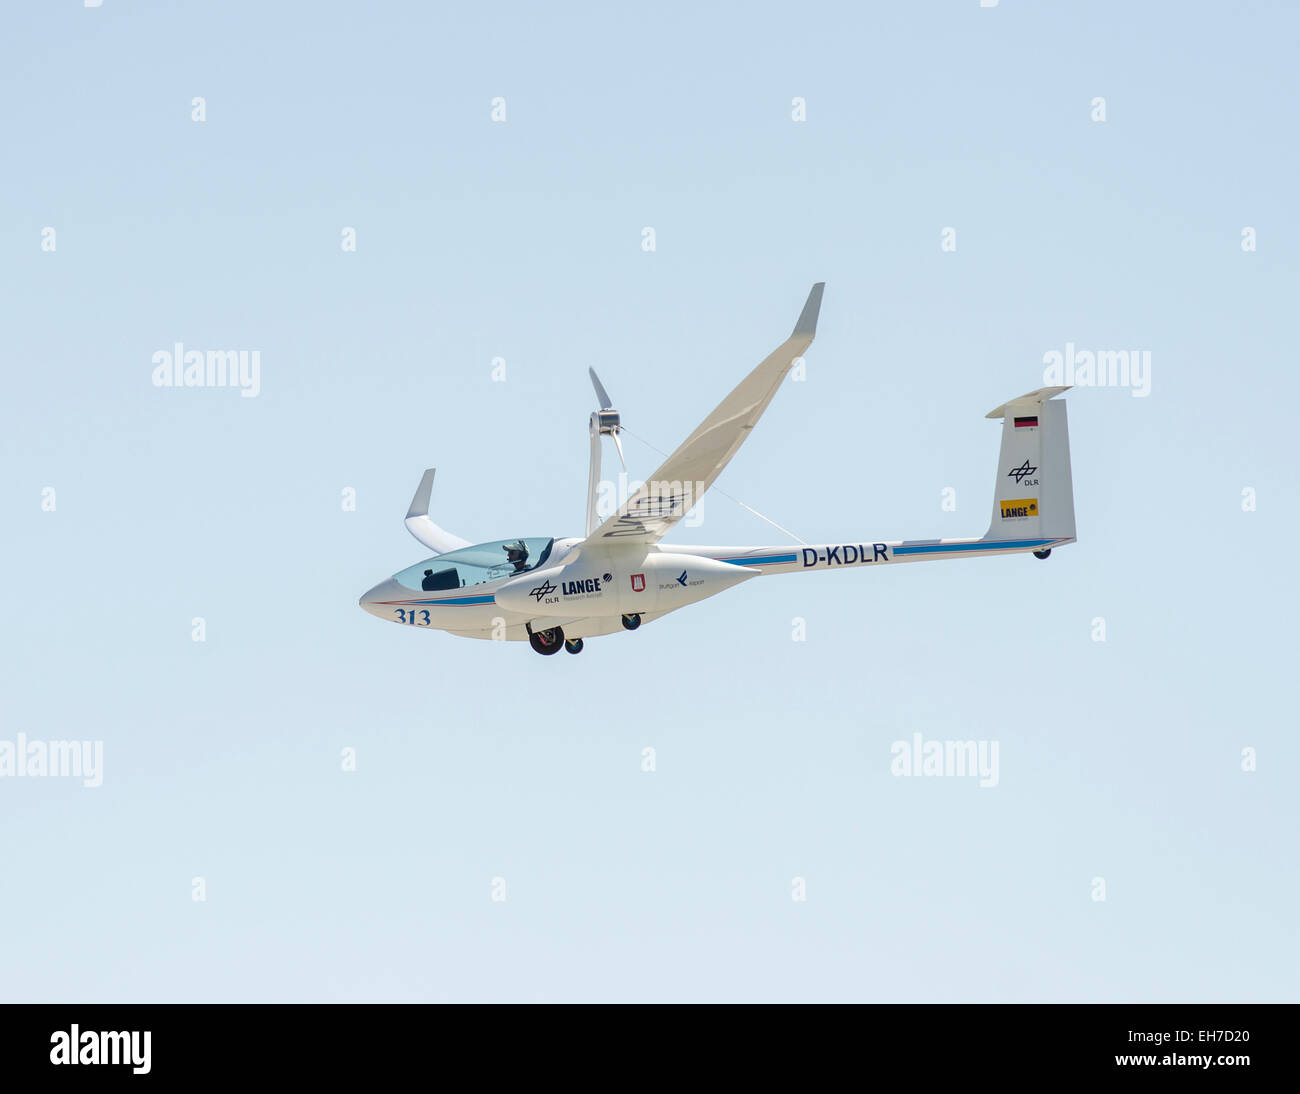 Antares DLR-H2-Brennstoffzellen angetriebene Flugzeug im Flug. Erste bemannte Flugzeug mit Brennstoffzellen betrieben. Stockfoto